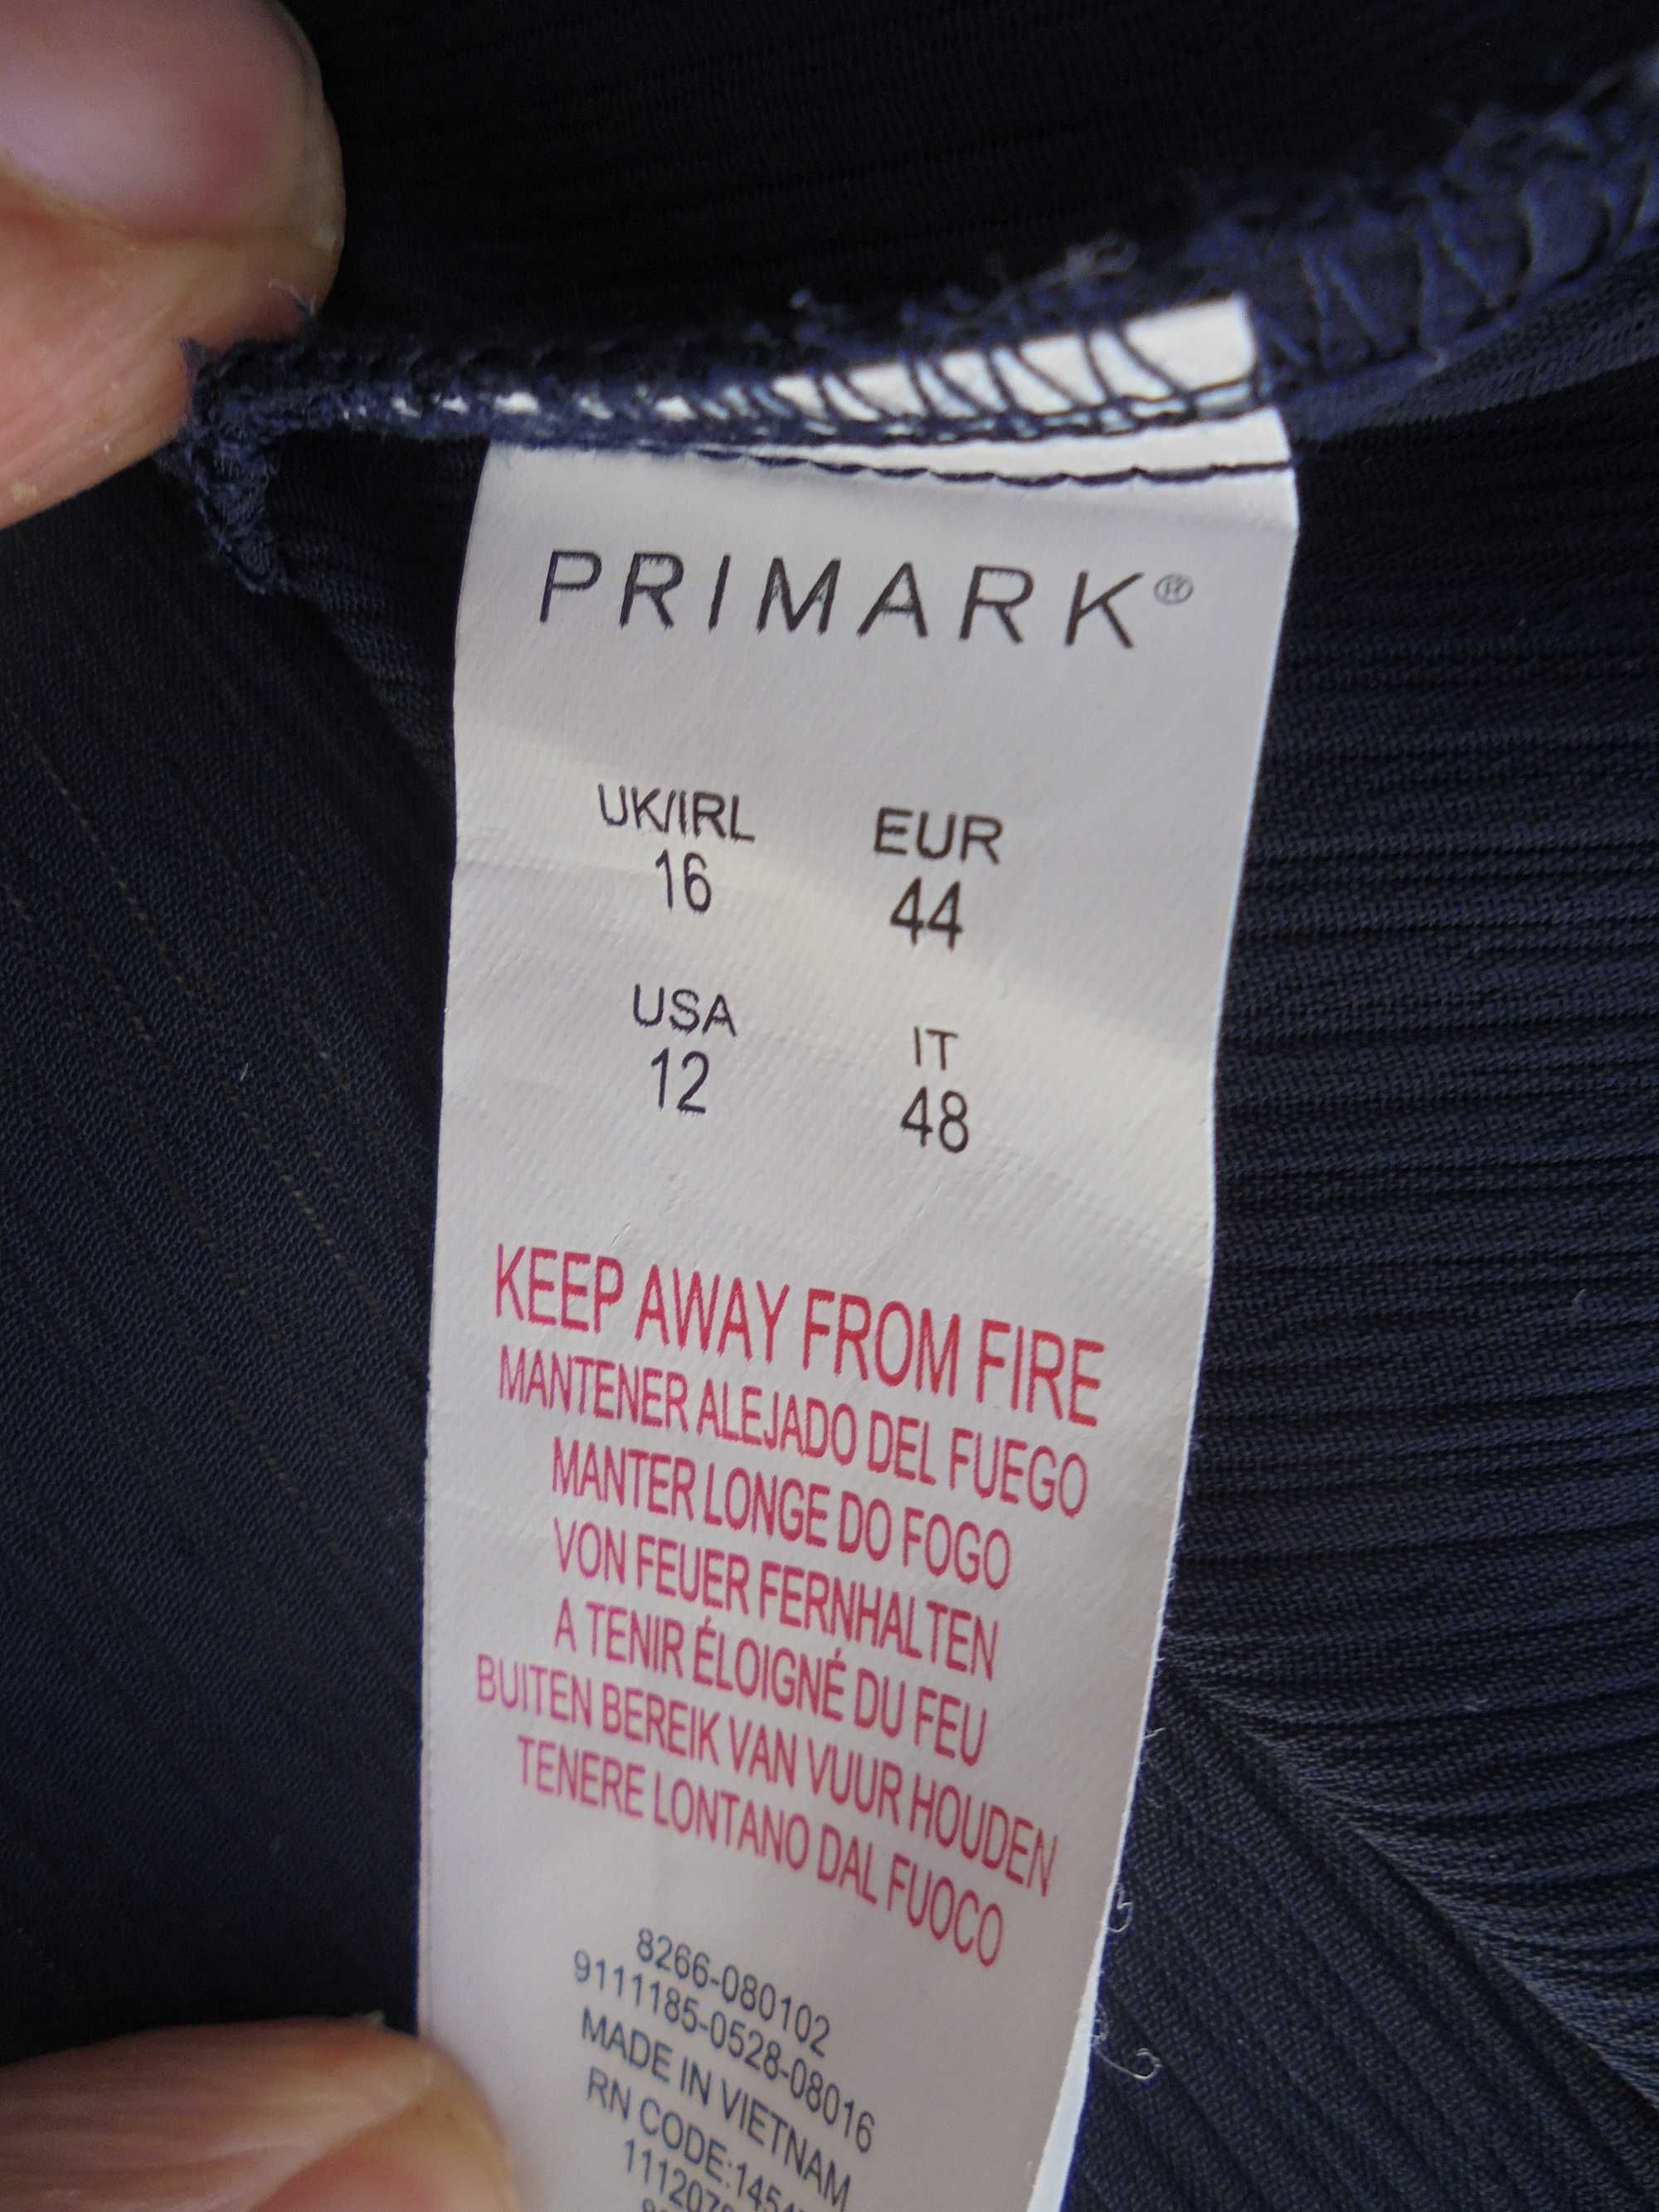 camisola de senhora da marca PRIMARK